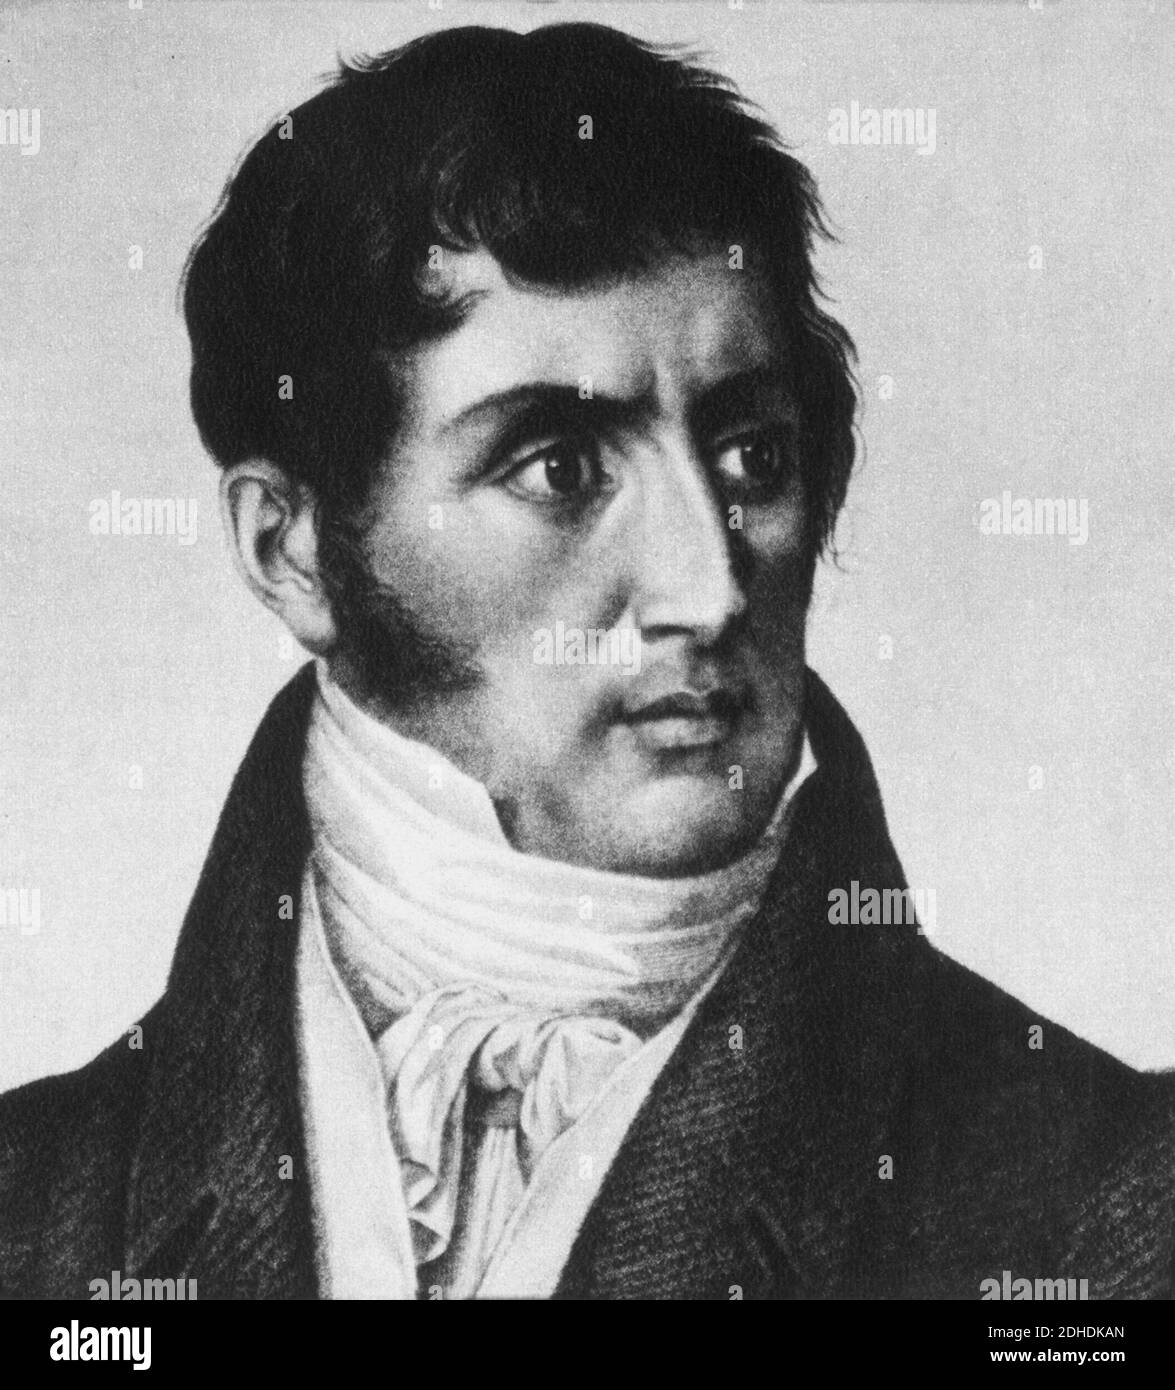 1825 , ITALIE : le plus célèbre écrivain italien ALESSANDRO MANZONI ( 1785 - 1873 ) , auteur du livre ' I Promessi Sposi ' ( 1827 - 1842 ) - SCRITTORE - LETTERATO - LETTERATURA - LITTÉRATURE - portrait - ritratto - favoriti - basetta - basette - collier - colletto - cravate - cravatta - ROMANTICO - ROMANTICIISMO - ROMANTISME - ROMANTIQUE --- Archivio GBB Banque D'Images